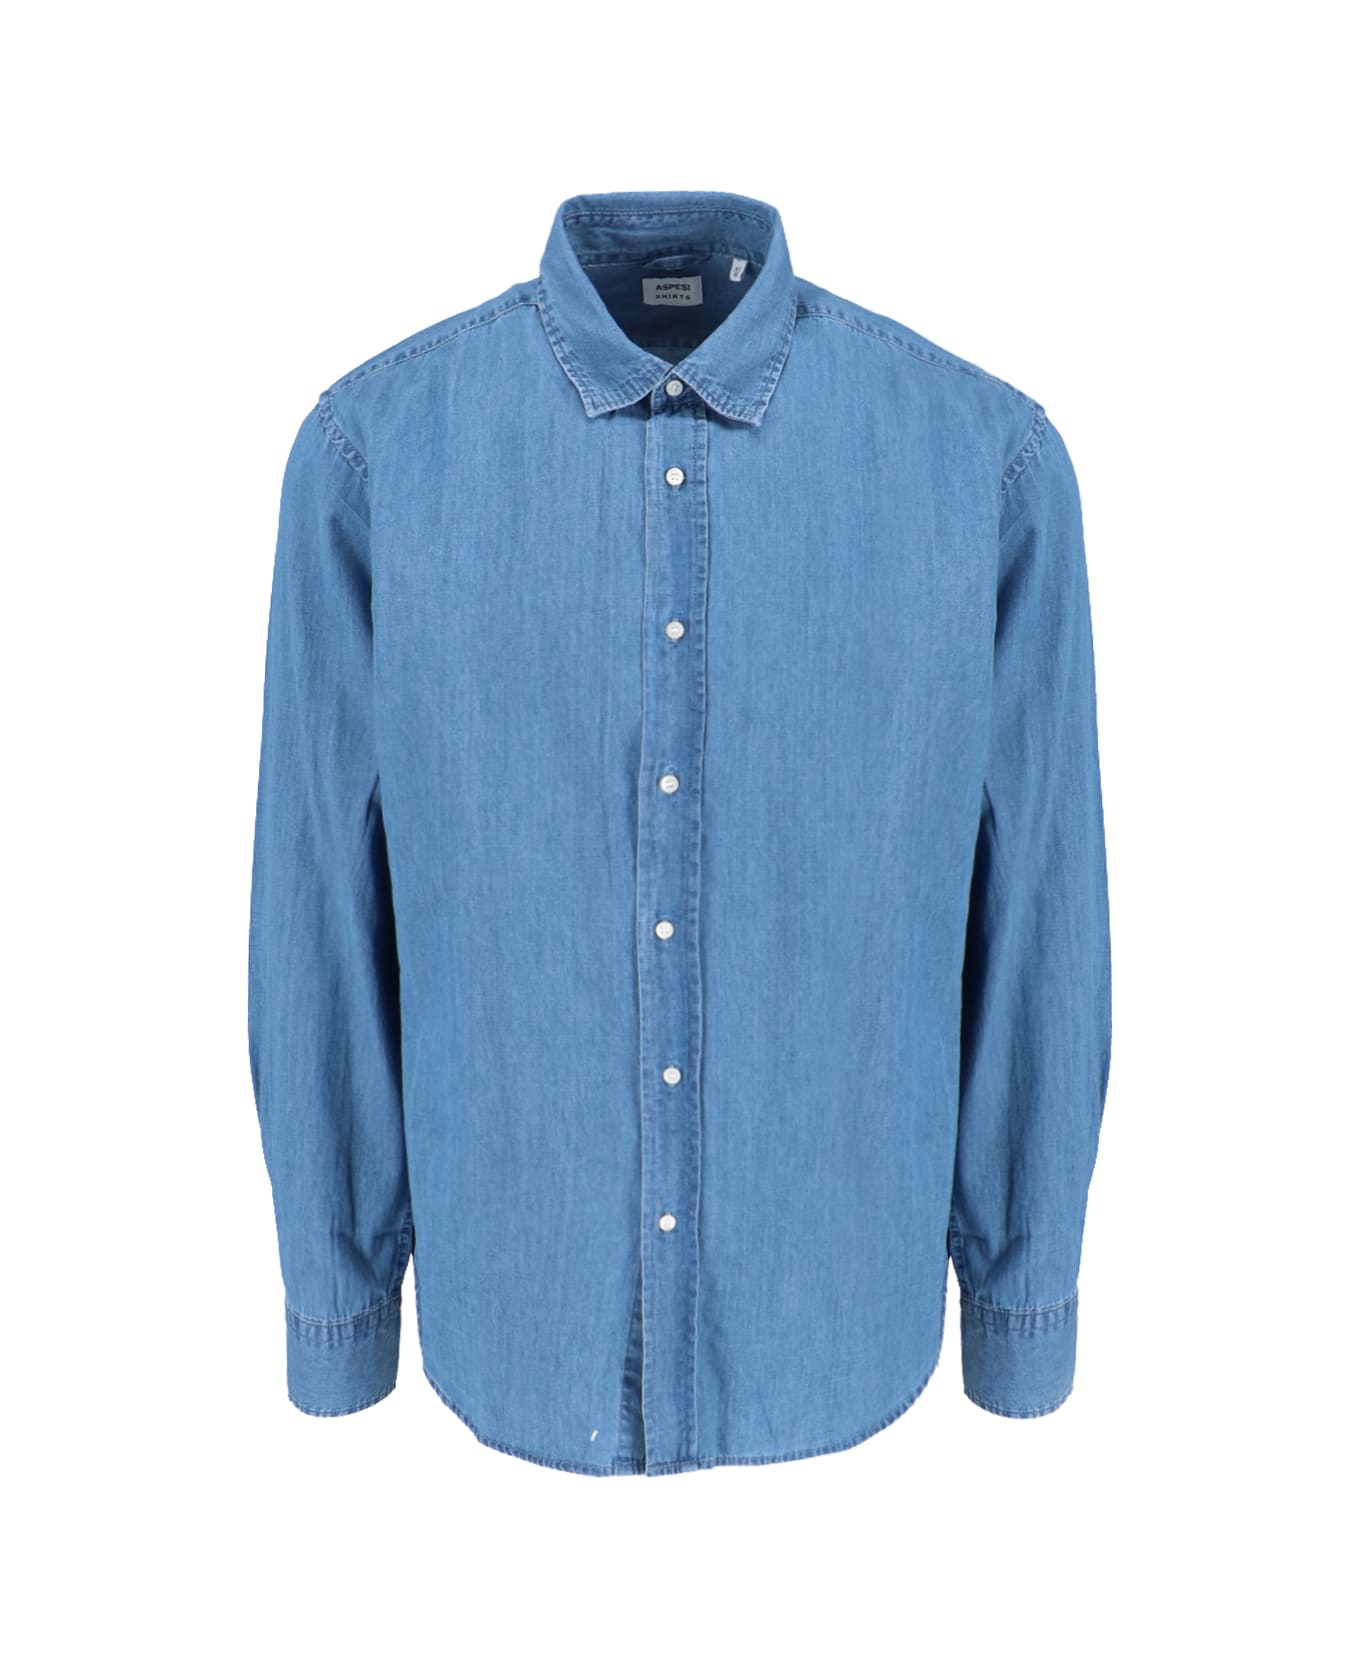 Aspesi Denim Shirt - Blue シャツ